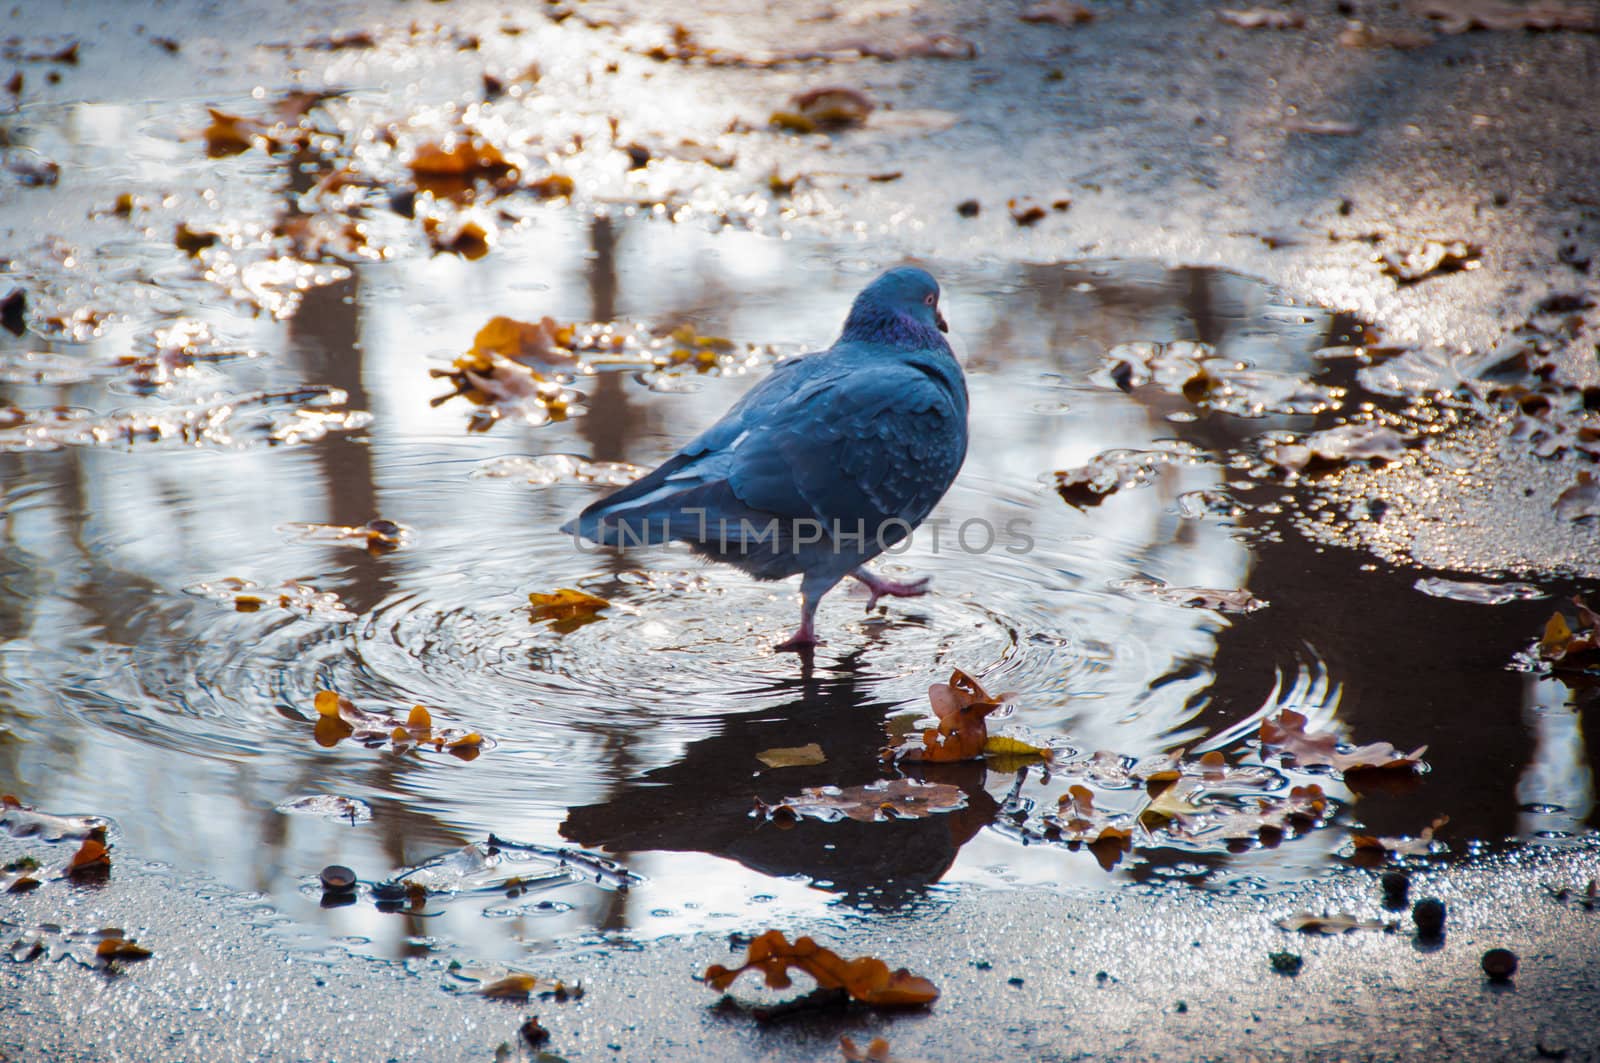 The bird a pigeon goes on a pool on asphalt